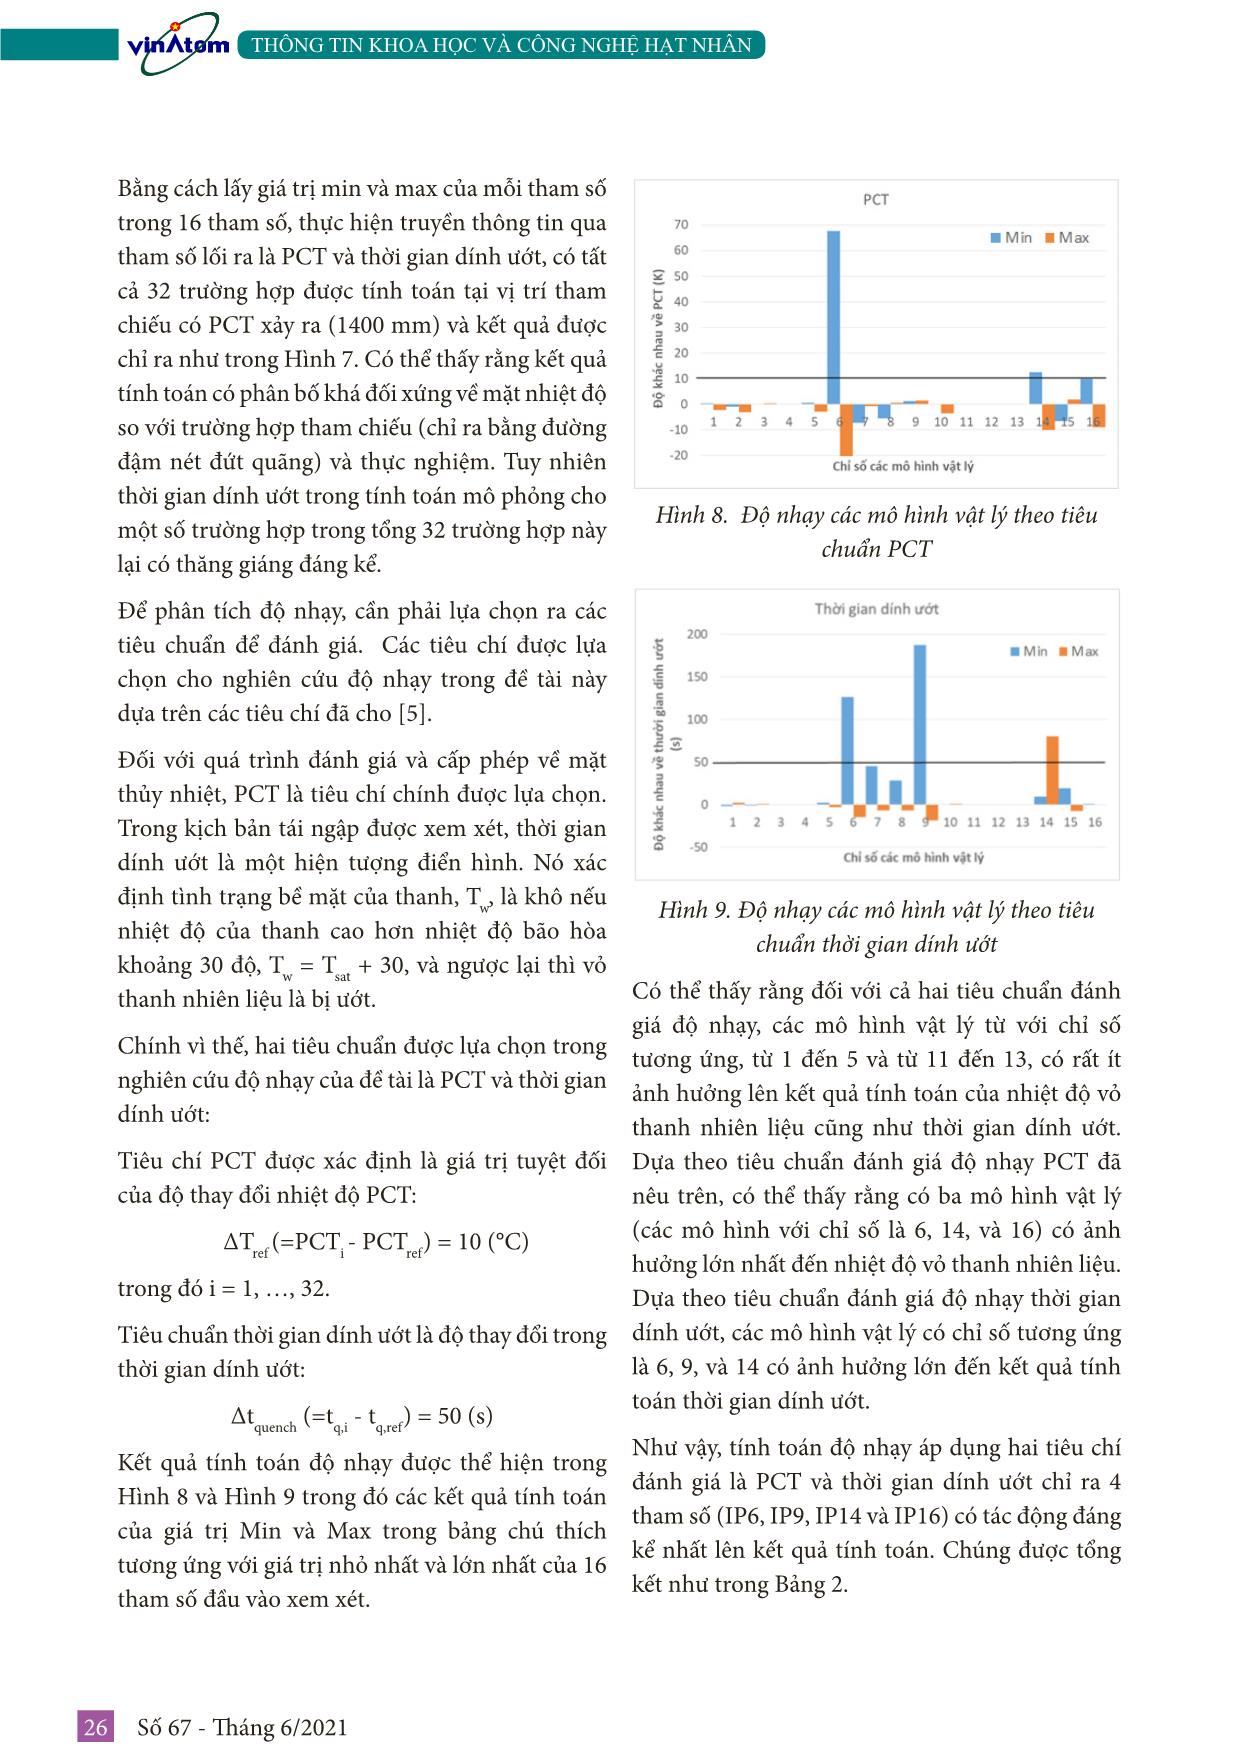 Nghiên cứu độ nhạy các mô hình vật lý sử dụng trong code tính toán thủy nhiệt relap5 dựa trên số liệu thực nghiệm của hệ thực nghiệm FEBA trang 6